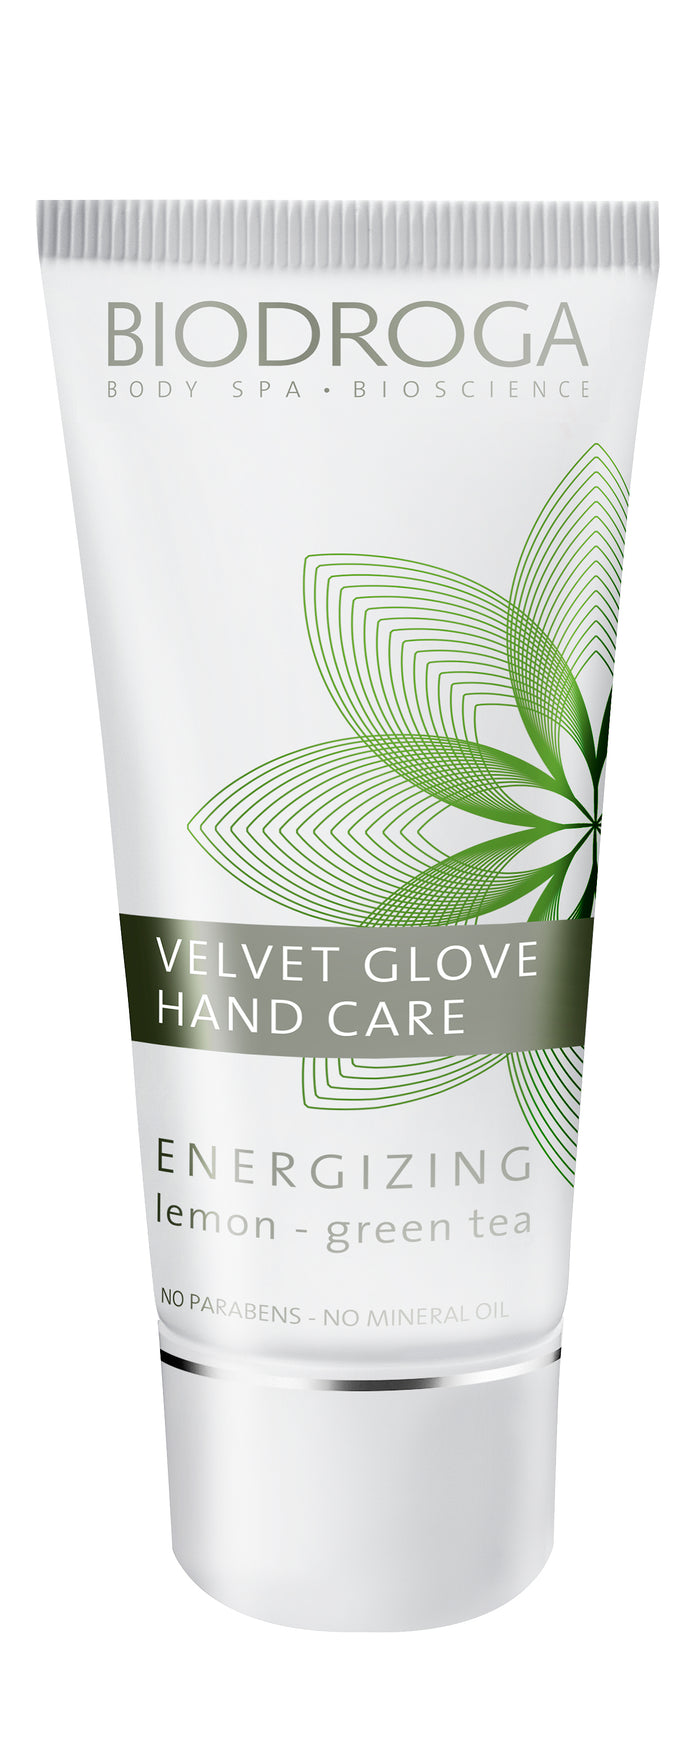 Velvet Glove Hand Care